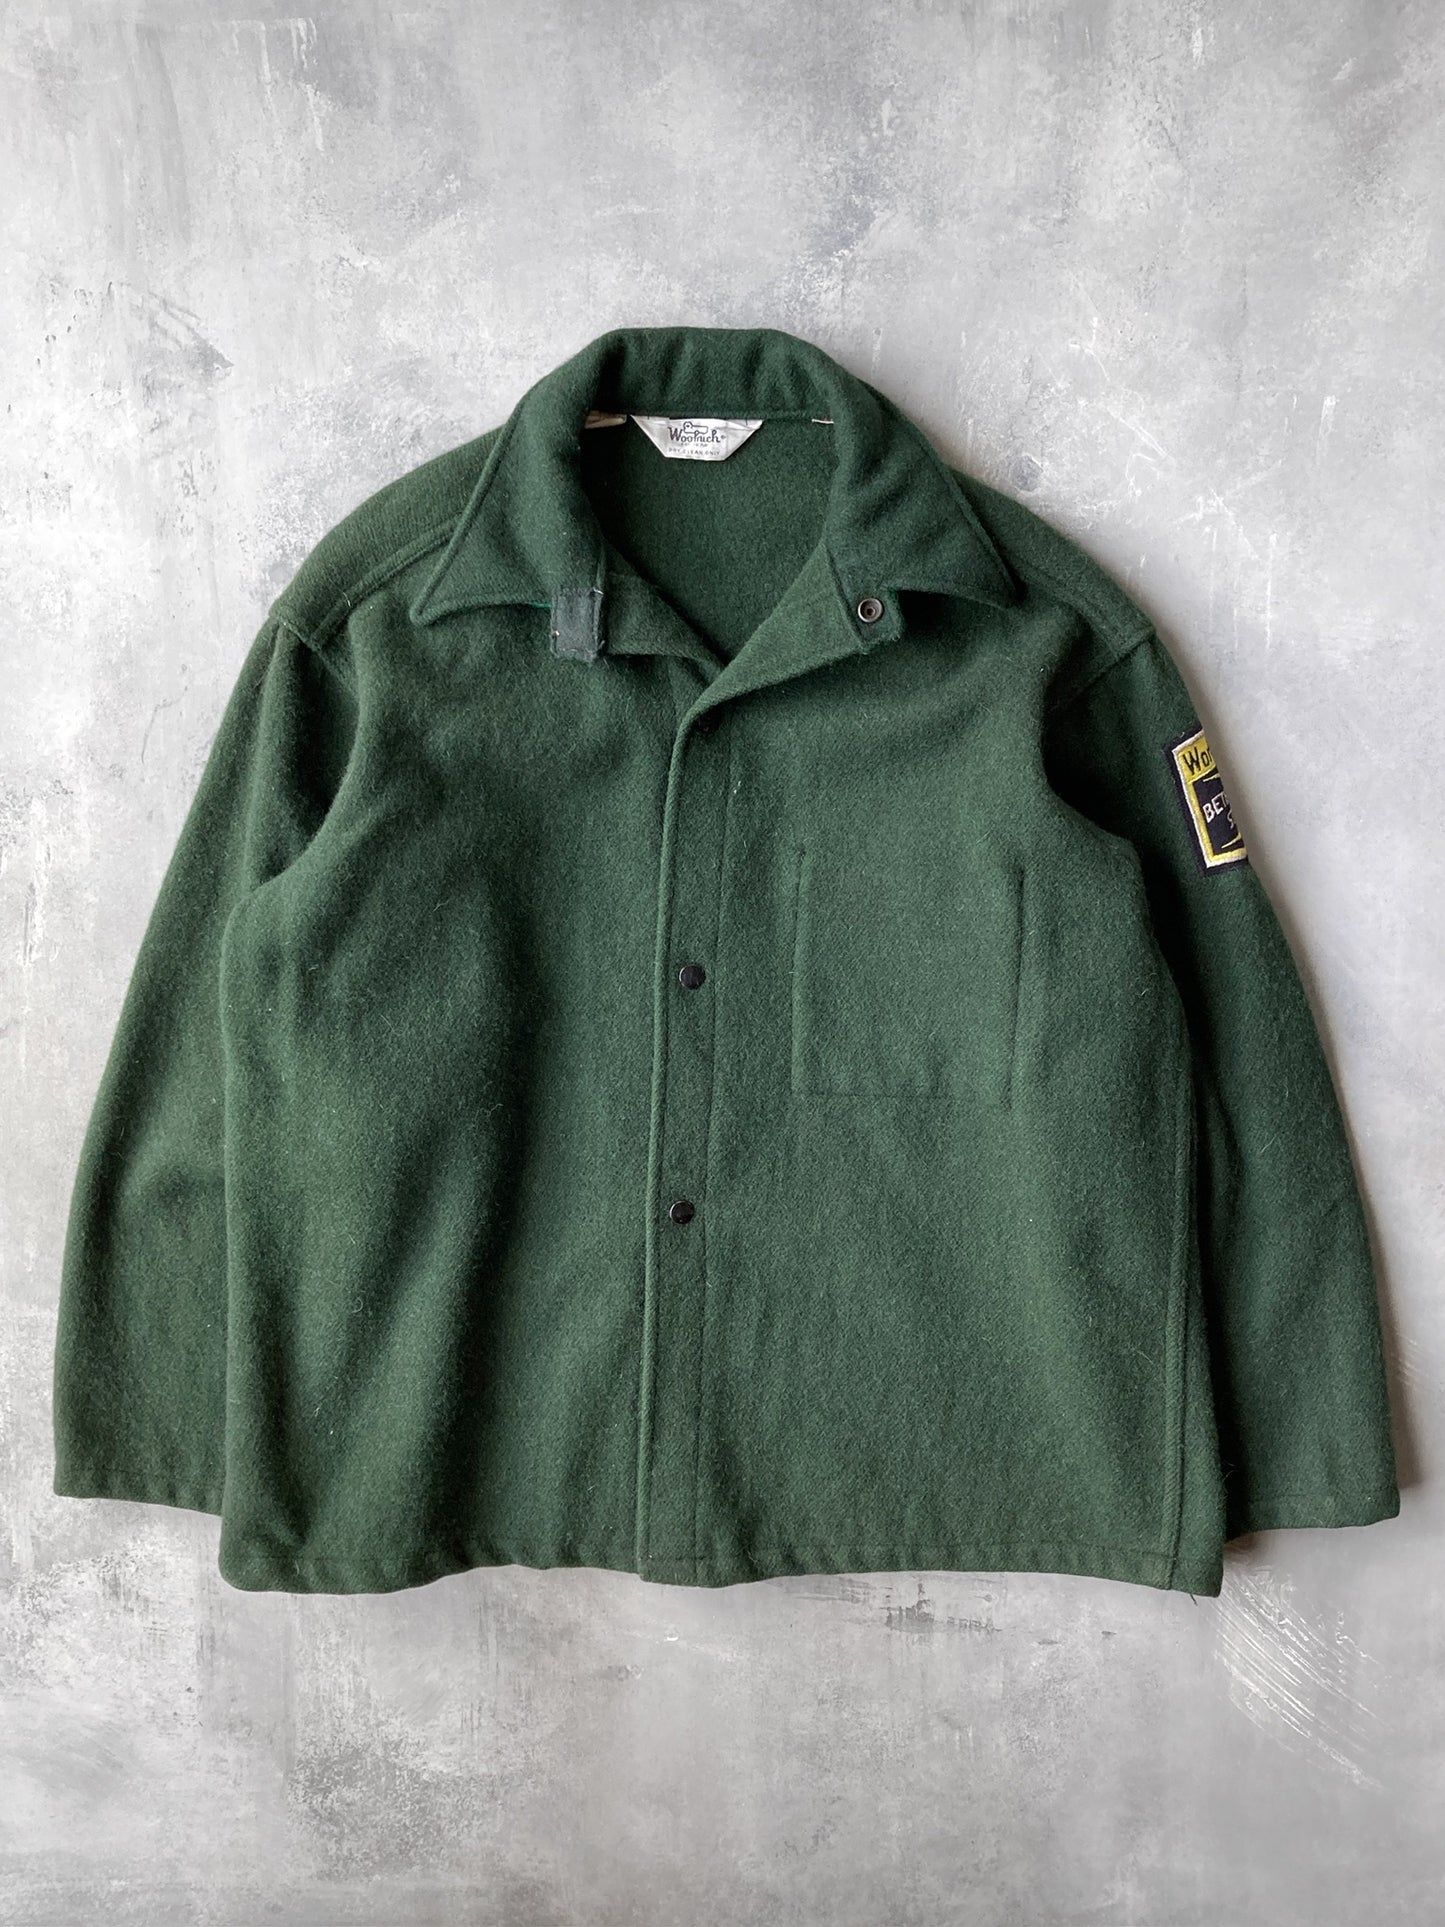 Bethlehem Steel Heavy Wool Shirt Jacket 80's - Medium / Large